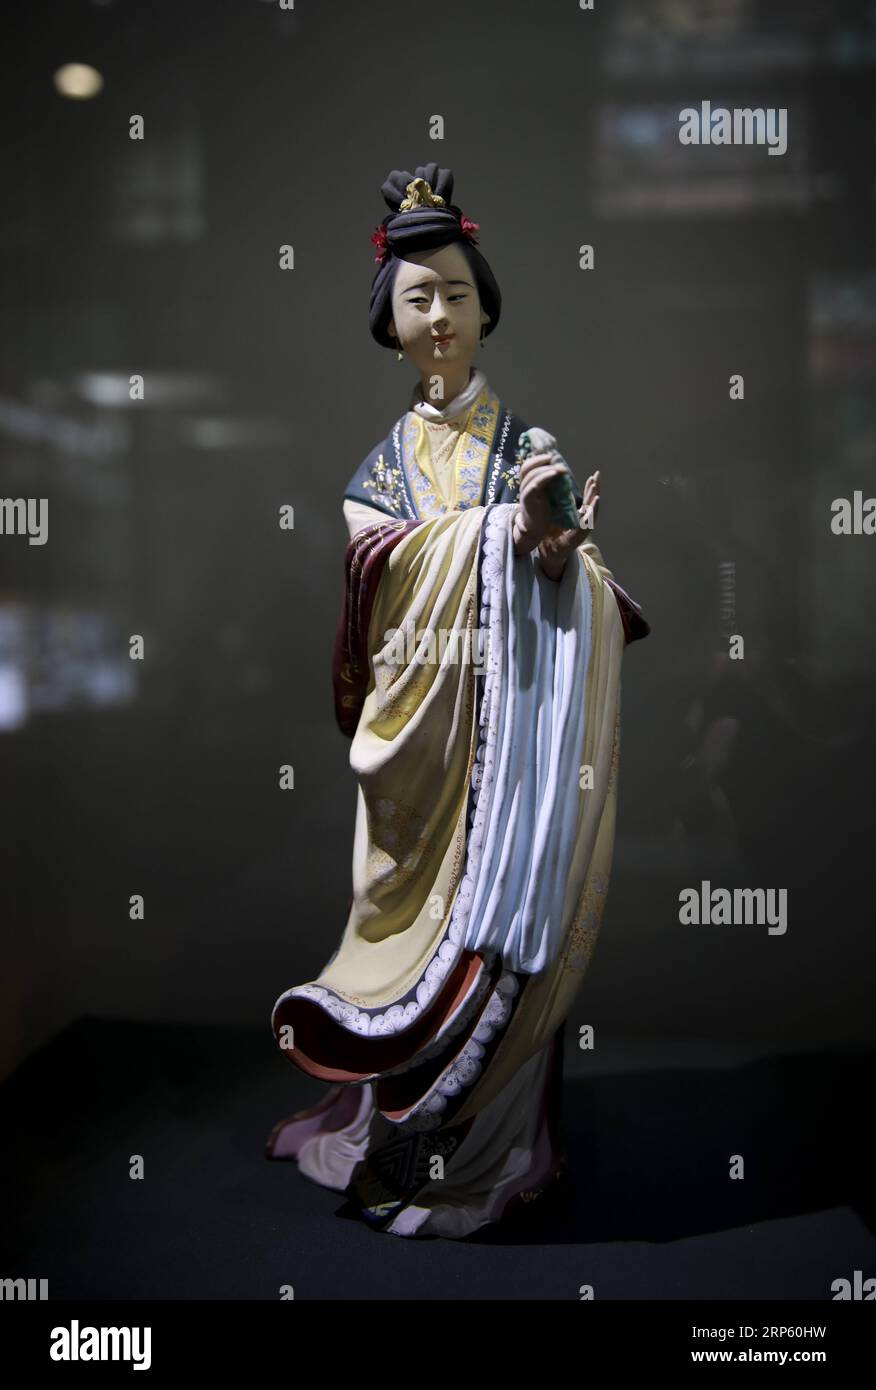 (181229) -- PÉKIN, 29 décembre 2018 (Xinhua) -- une photo prise le 28 décembre 2018 montre une figurine de la galerie d'art Clay Figure Zhang à Tianjin, dans le nord de la Chine. Figure d'argile Zhang est un nom familier de l'art populaire traditionnel en Chine, et une telle œuvre a une histoire de près de 200 ans. Zhang Yu, le fabricant de figurines en argile de sixième génération de sa famille, a pris en charge l’entreprise familiale en 1996, alors qu’il n’avait que 18 ans. Au fil du temps, le métier et la marque ont évolué. Au lieu de fabriquer des figurines et de les vendre comme un vendeur de rue, il a engagé des directeurs artistiques pour exploiter et commercialiser la valeur artistique Banque D'Images